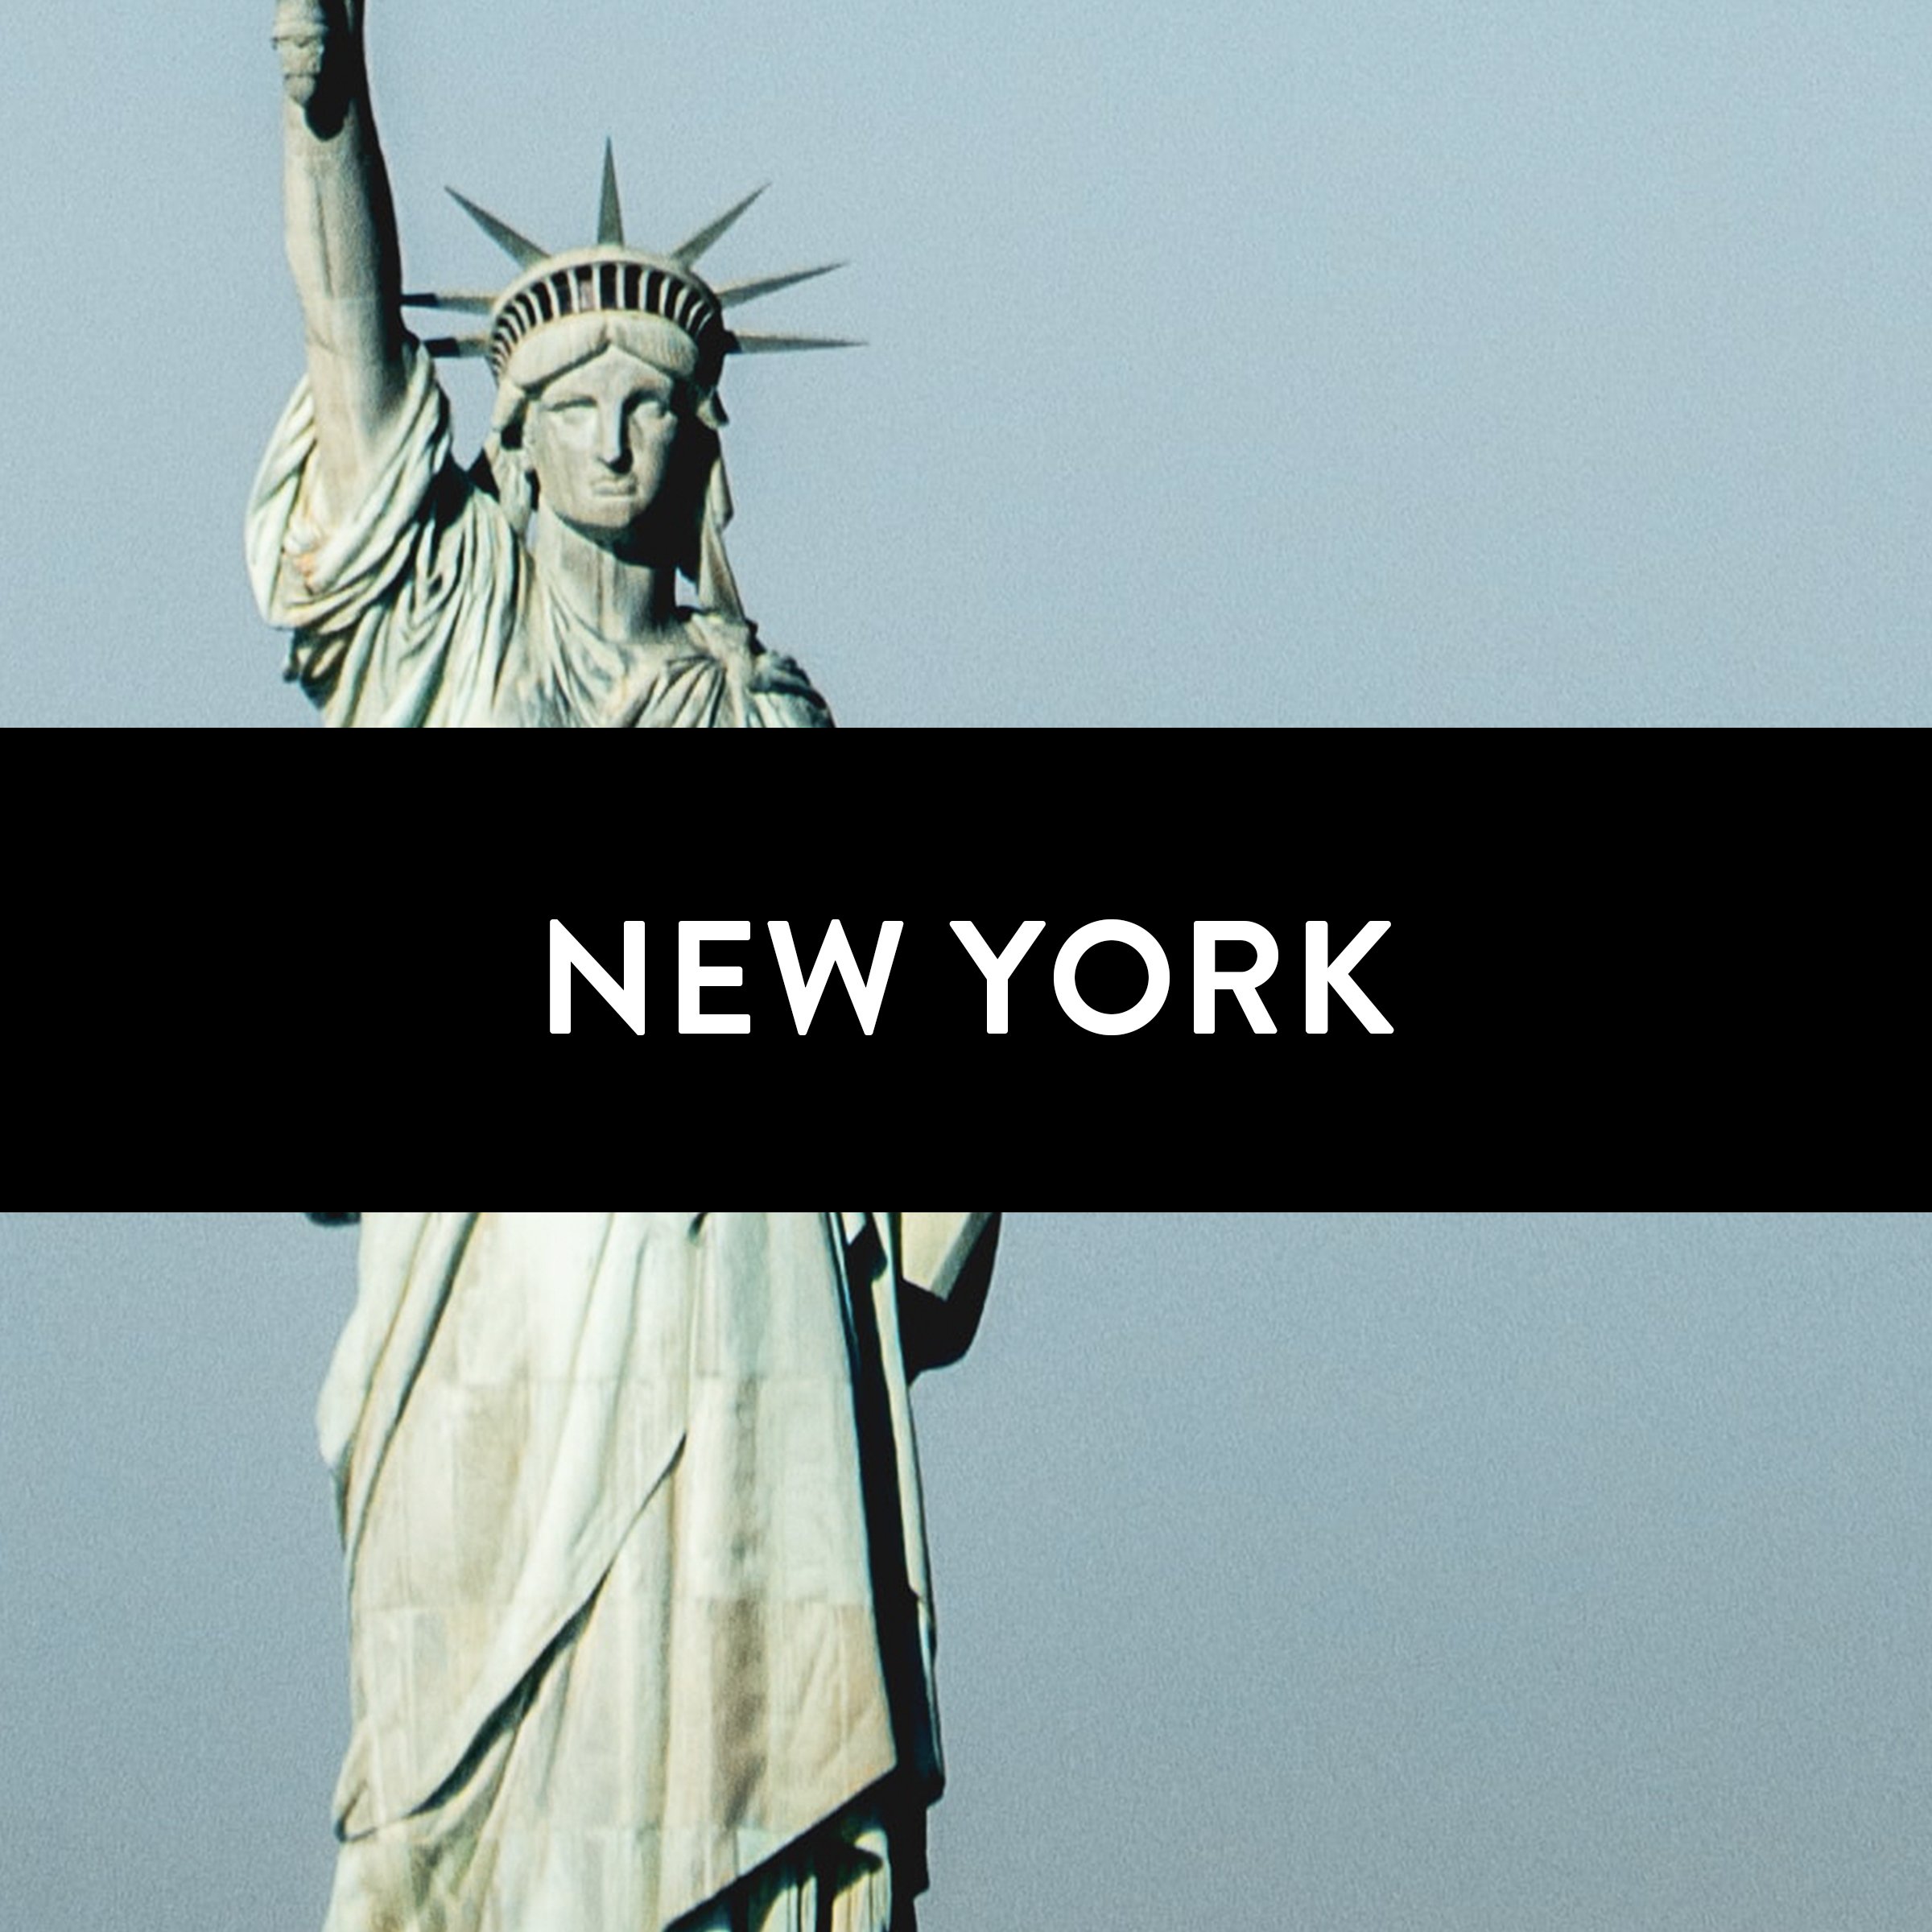 Cover - New York.jpg